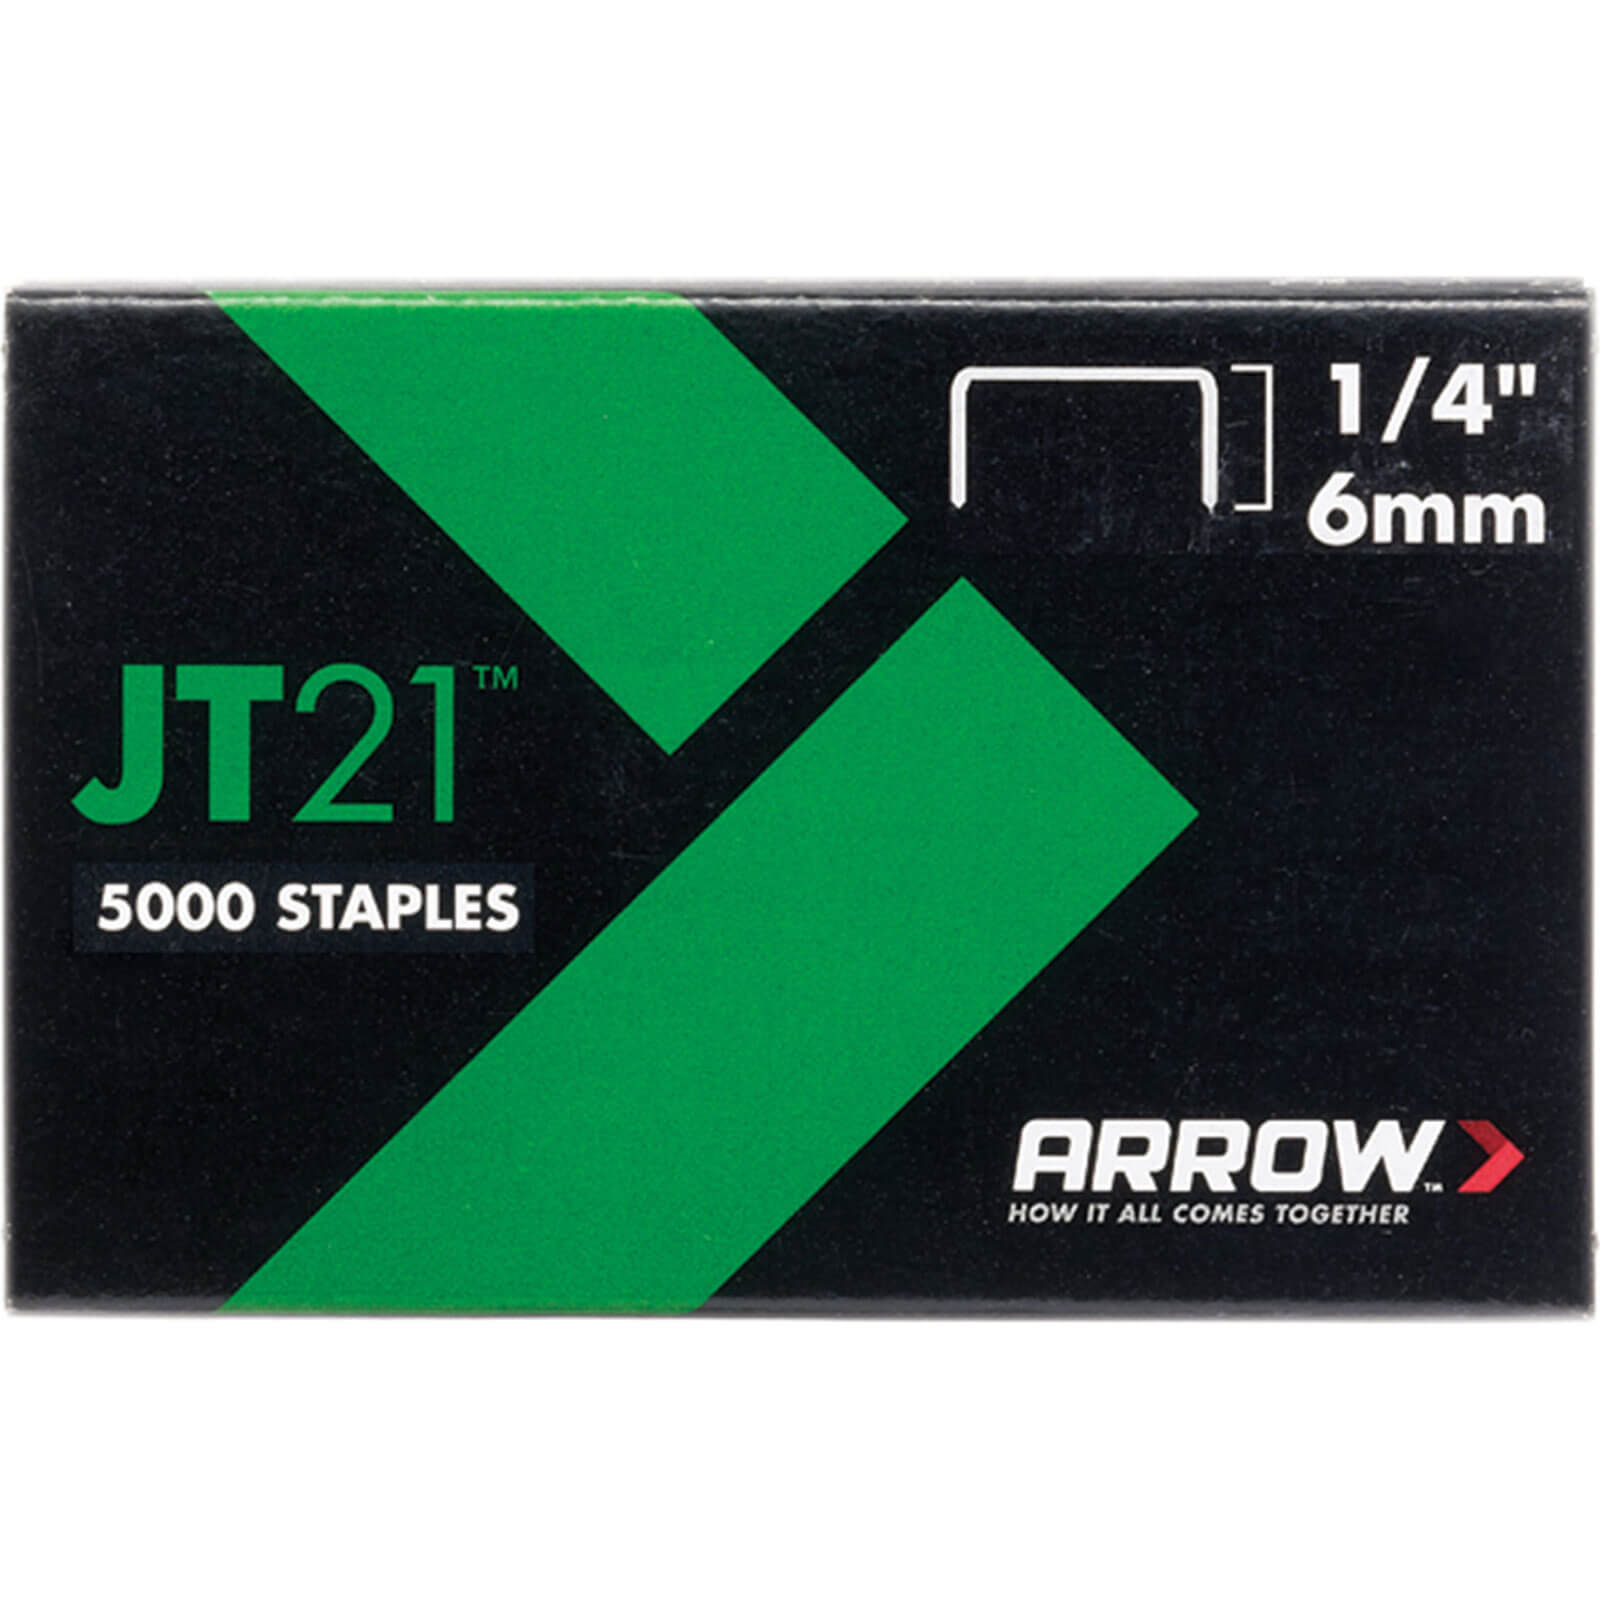 Arrow 276 Staples 10mm / 3/8" Pack of 1000 to fir JT21 & 21C